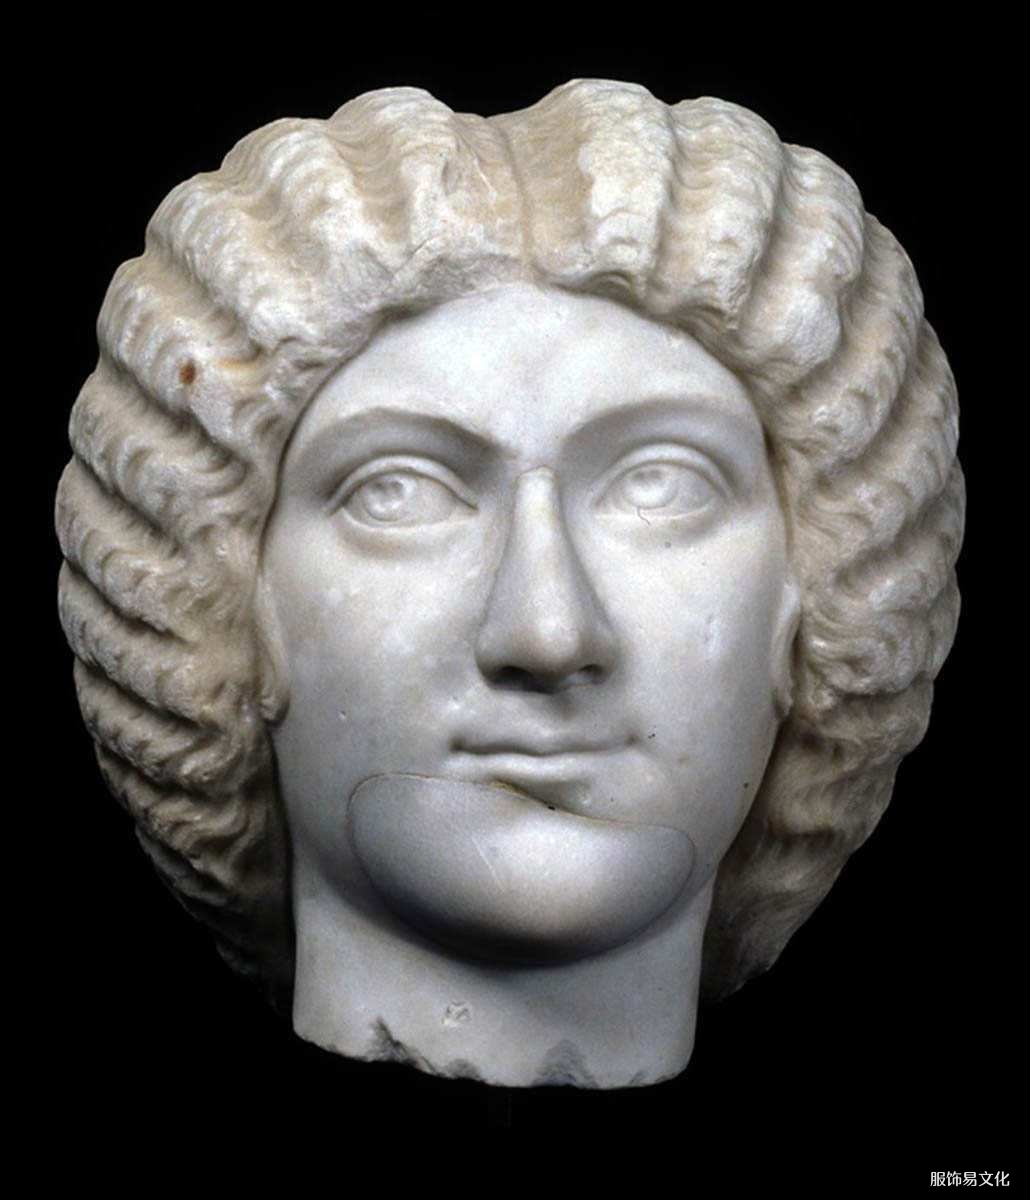 朱莉娅·多姆娜罗马皇后肖像半身像